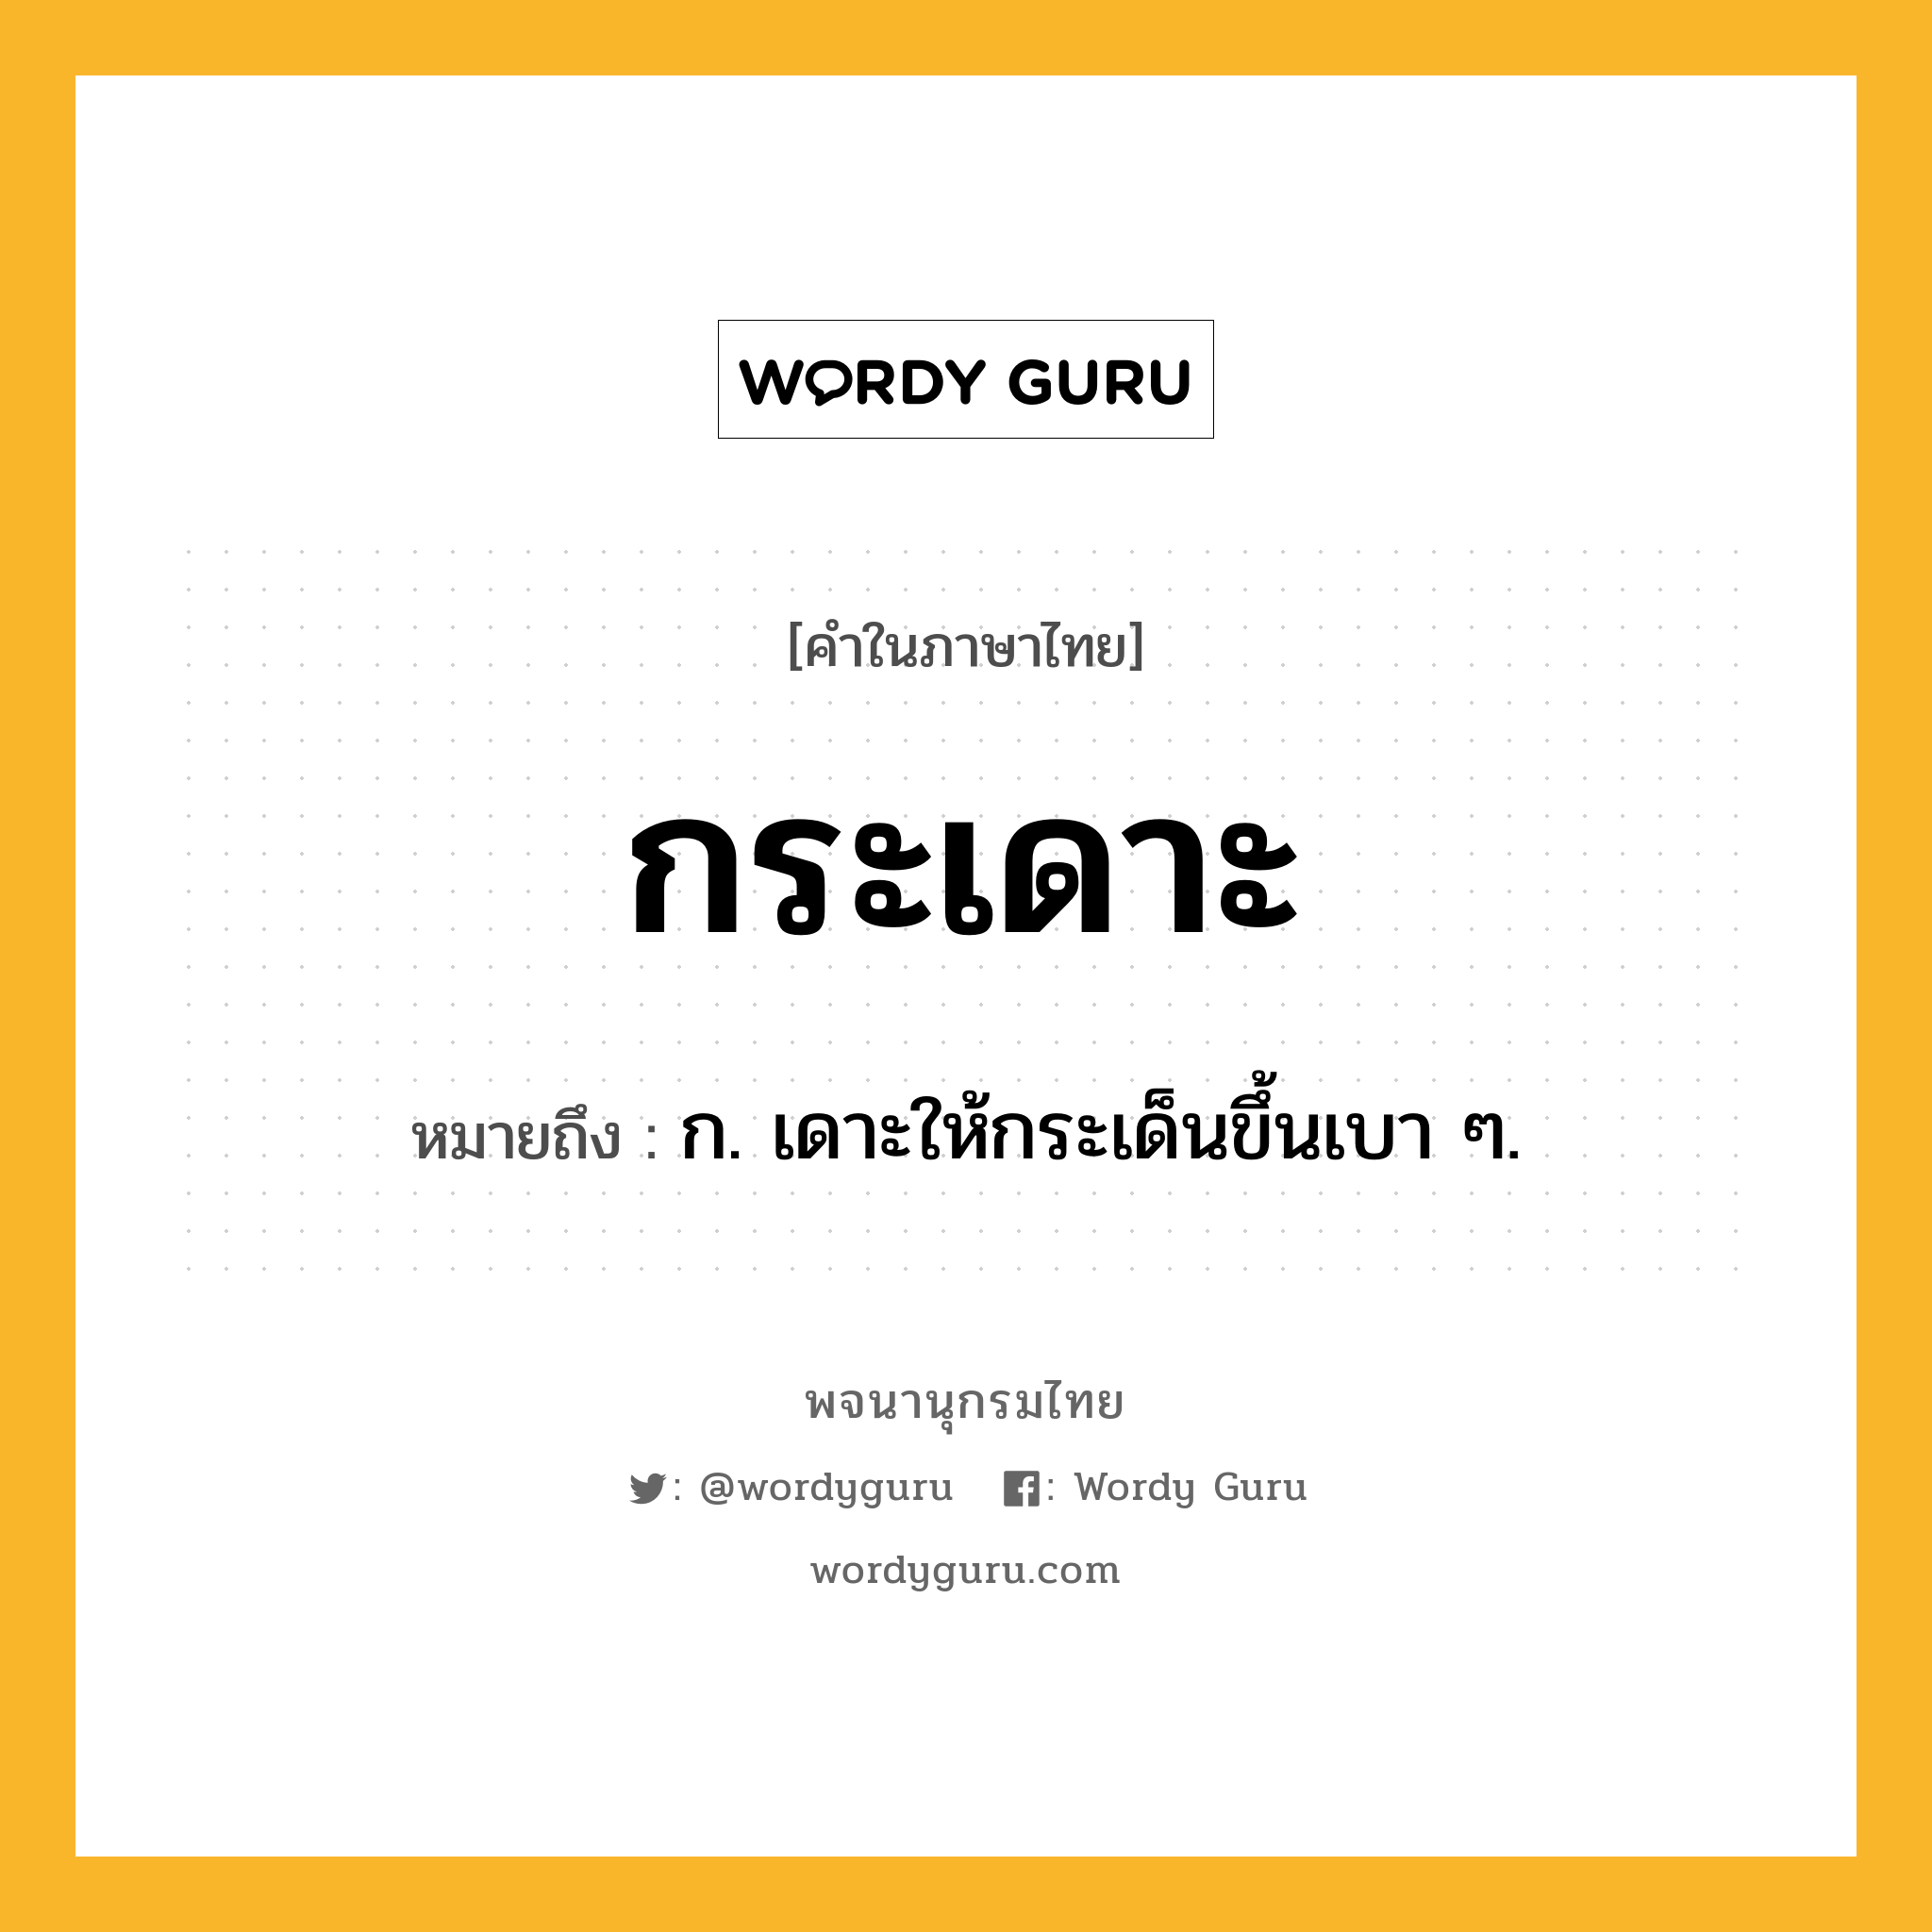 กระเดาะ หมายถึงอะไร?, คำในภาษาไทย กระเดาะ หมายถึง ก. เดาะให้กระเด็นขึ้นเบา ๆ.